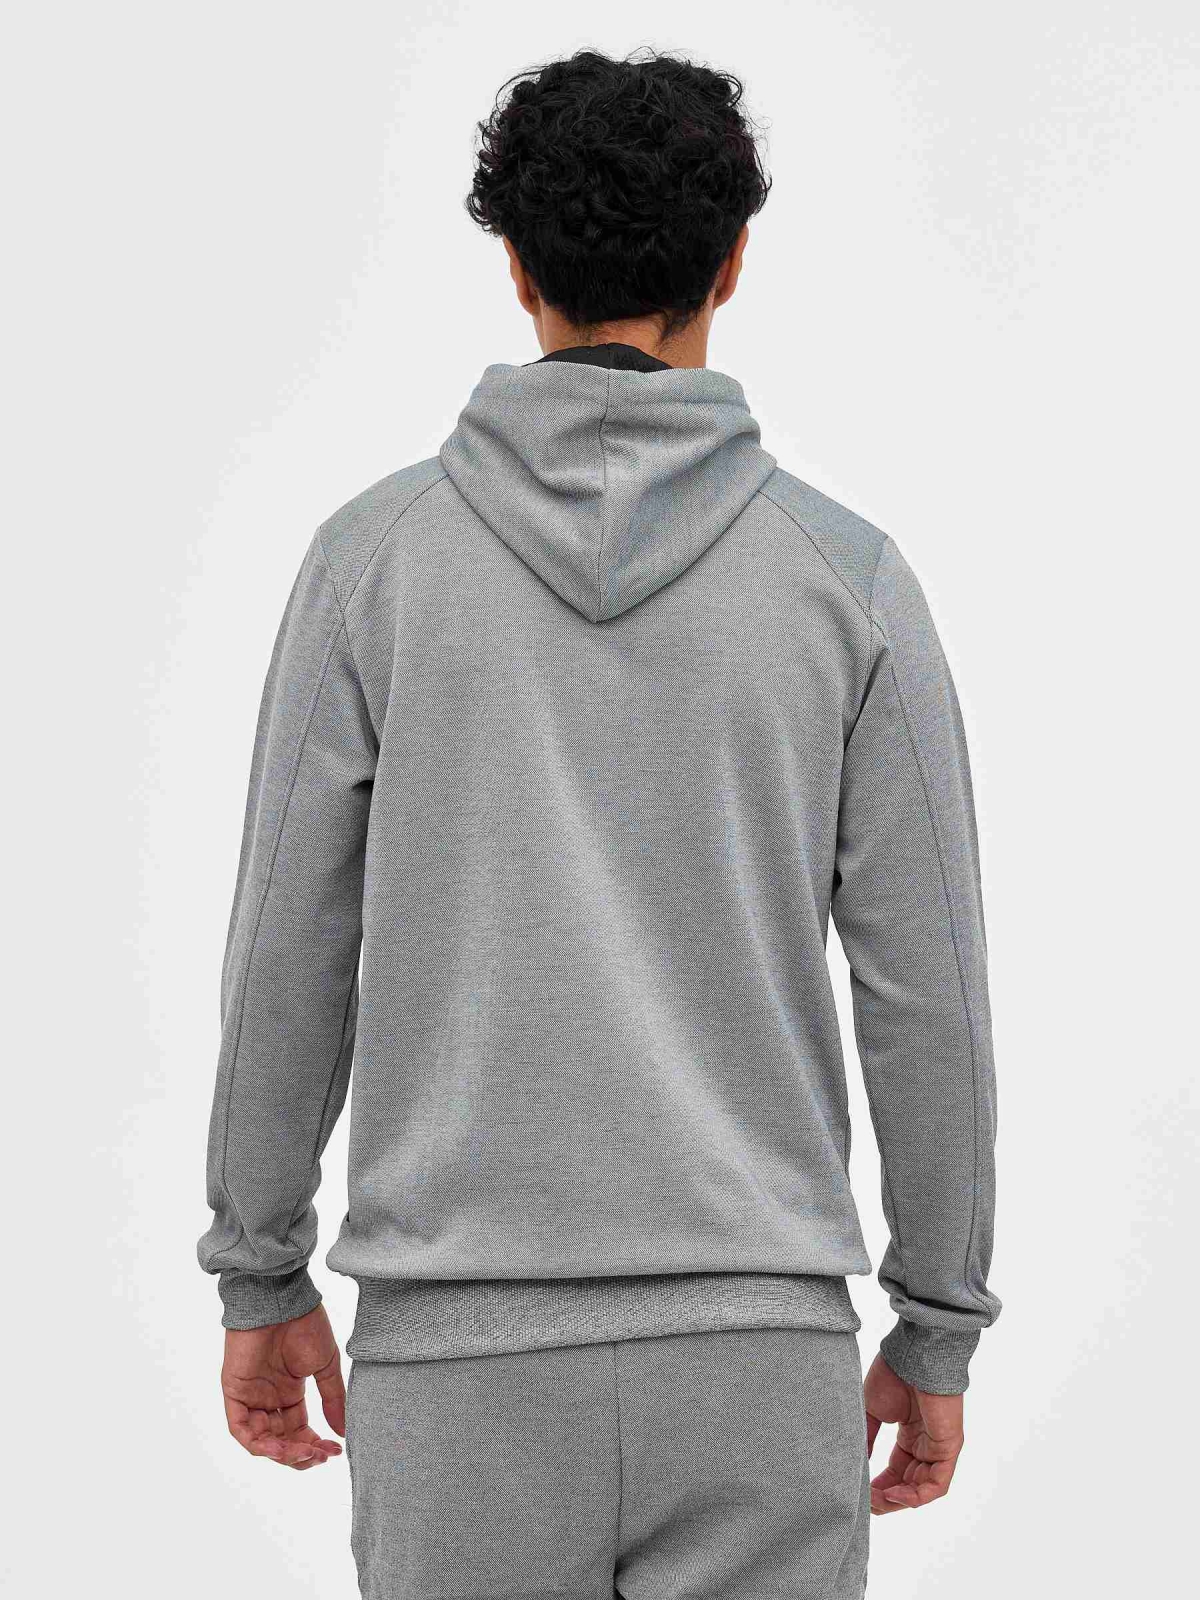 Sweatshirt com capuz semicerrada cinza vista meia traseira